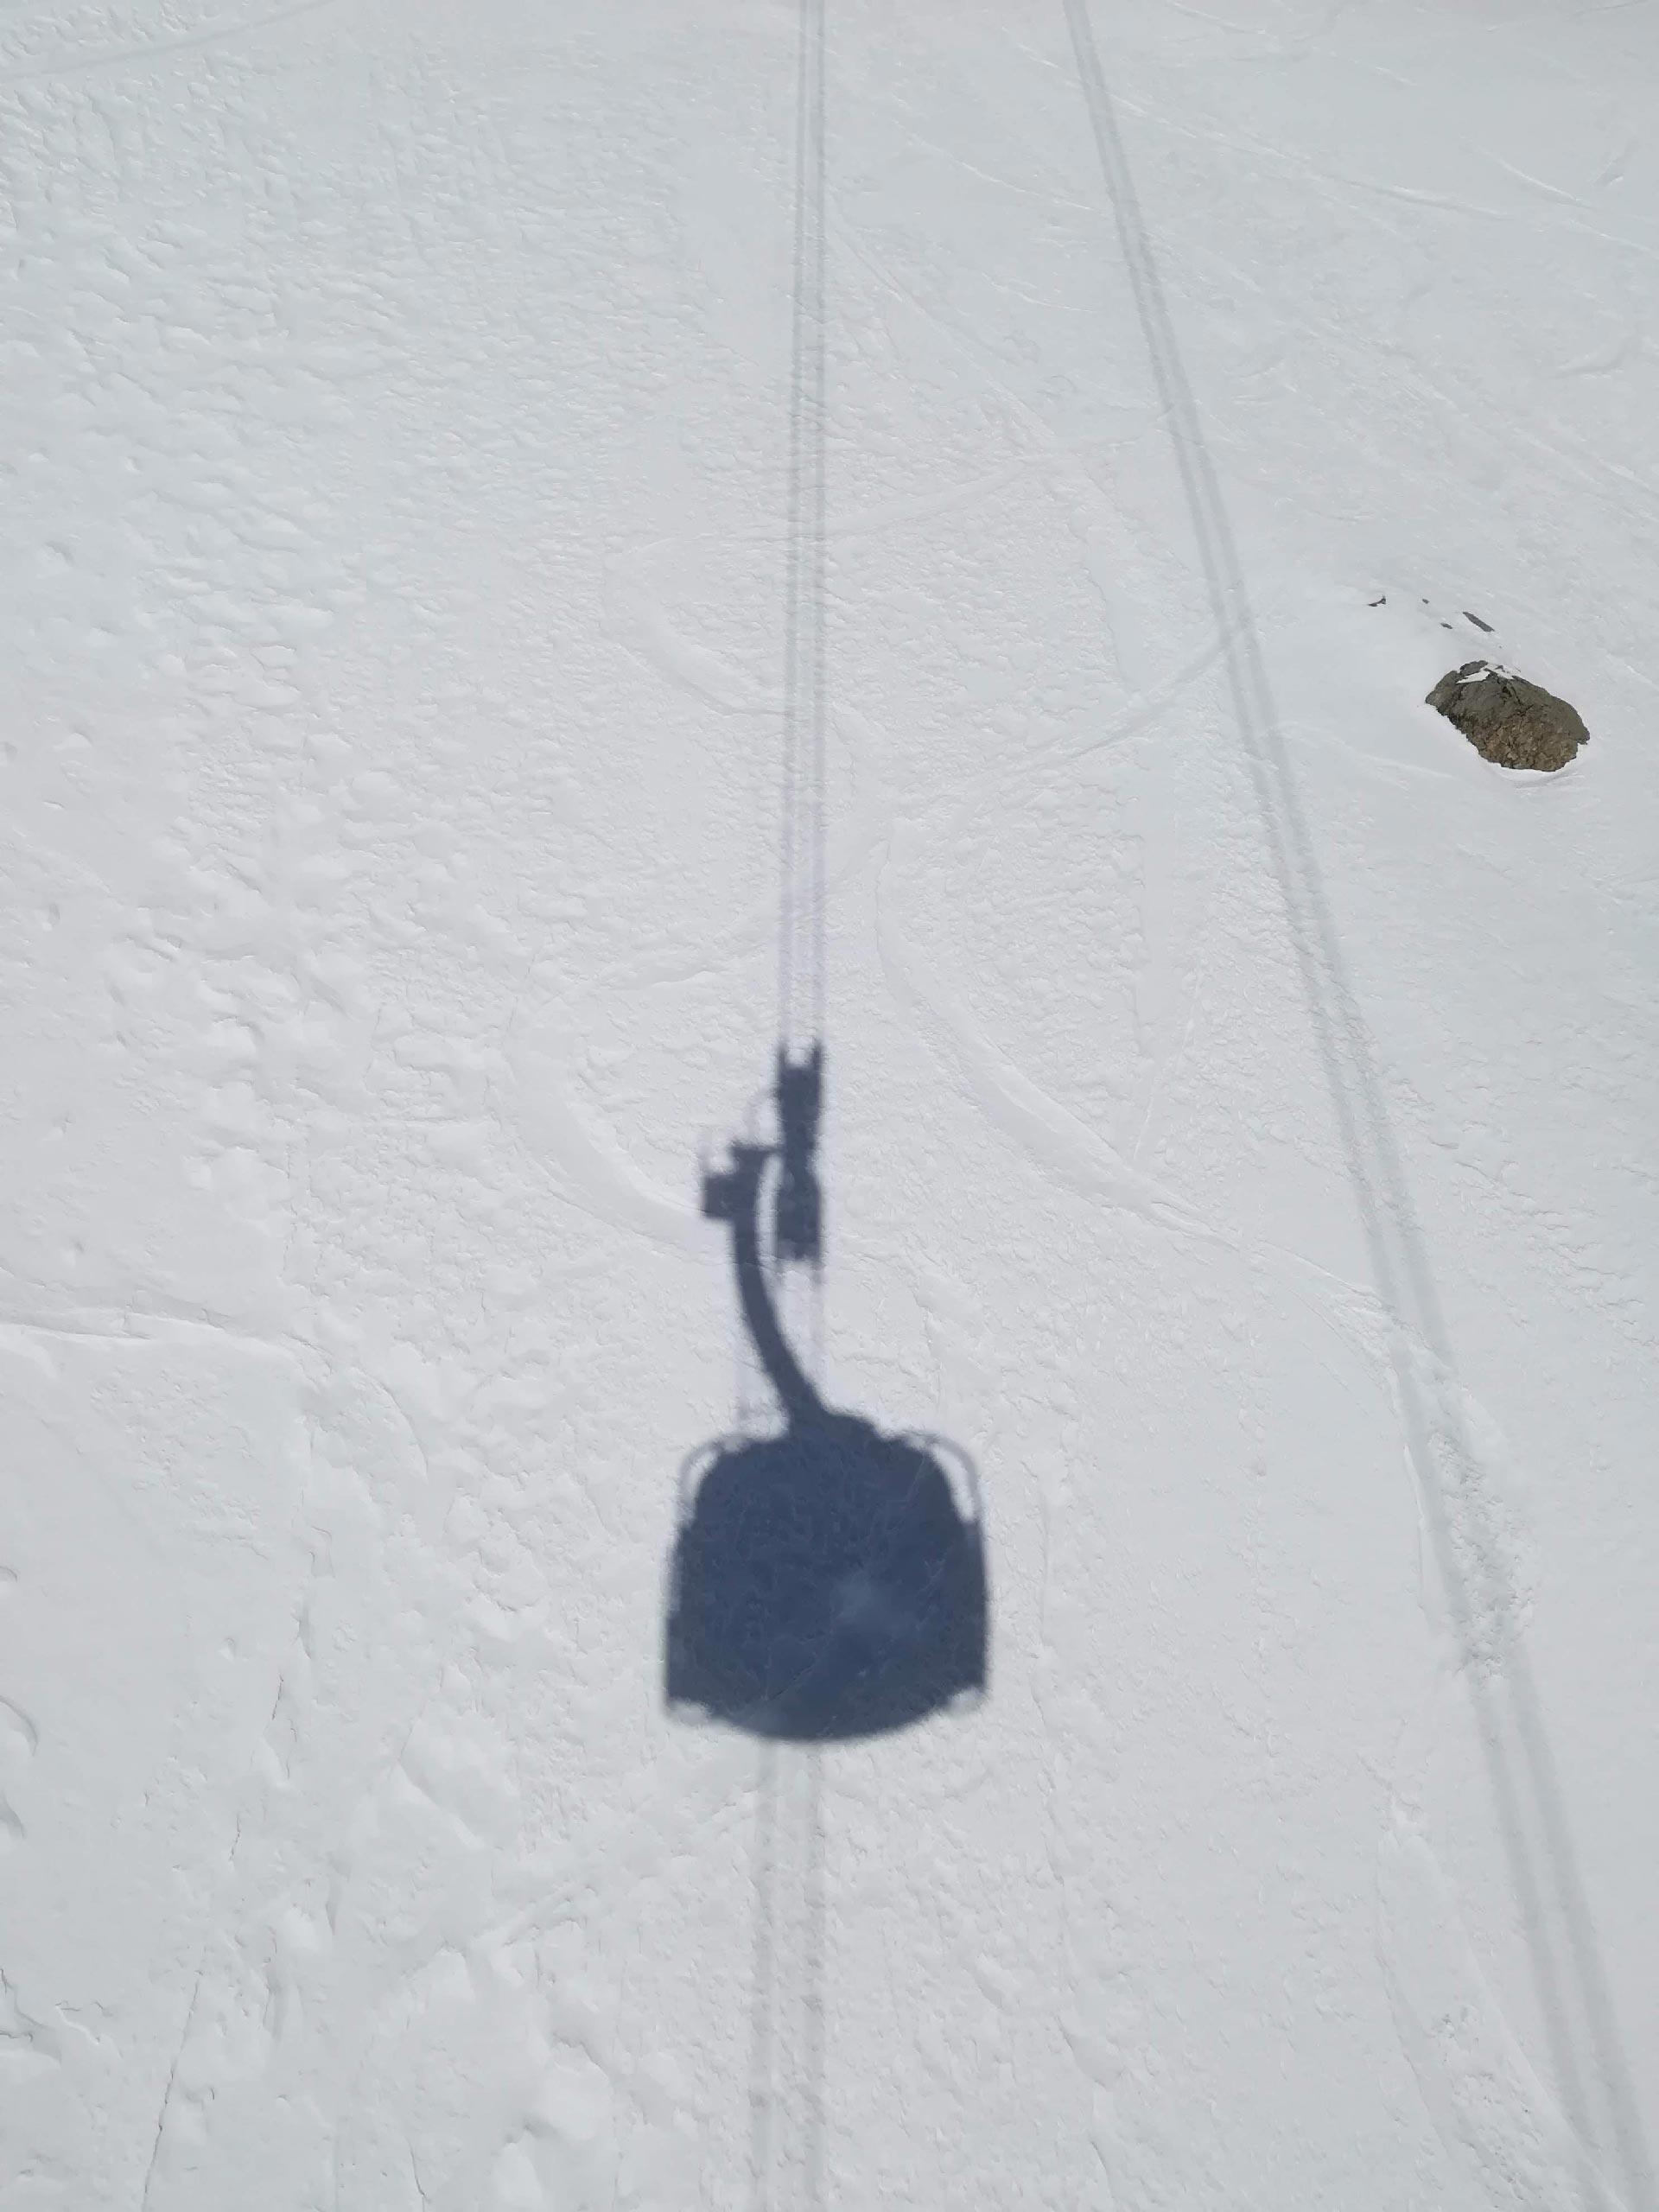 ombra proiettata sulla neve di una cabina girevole della Skyway Monte Bianco, Courmayeur, Valle d'Aosta